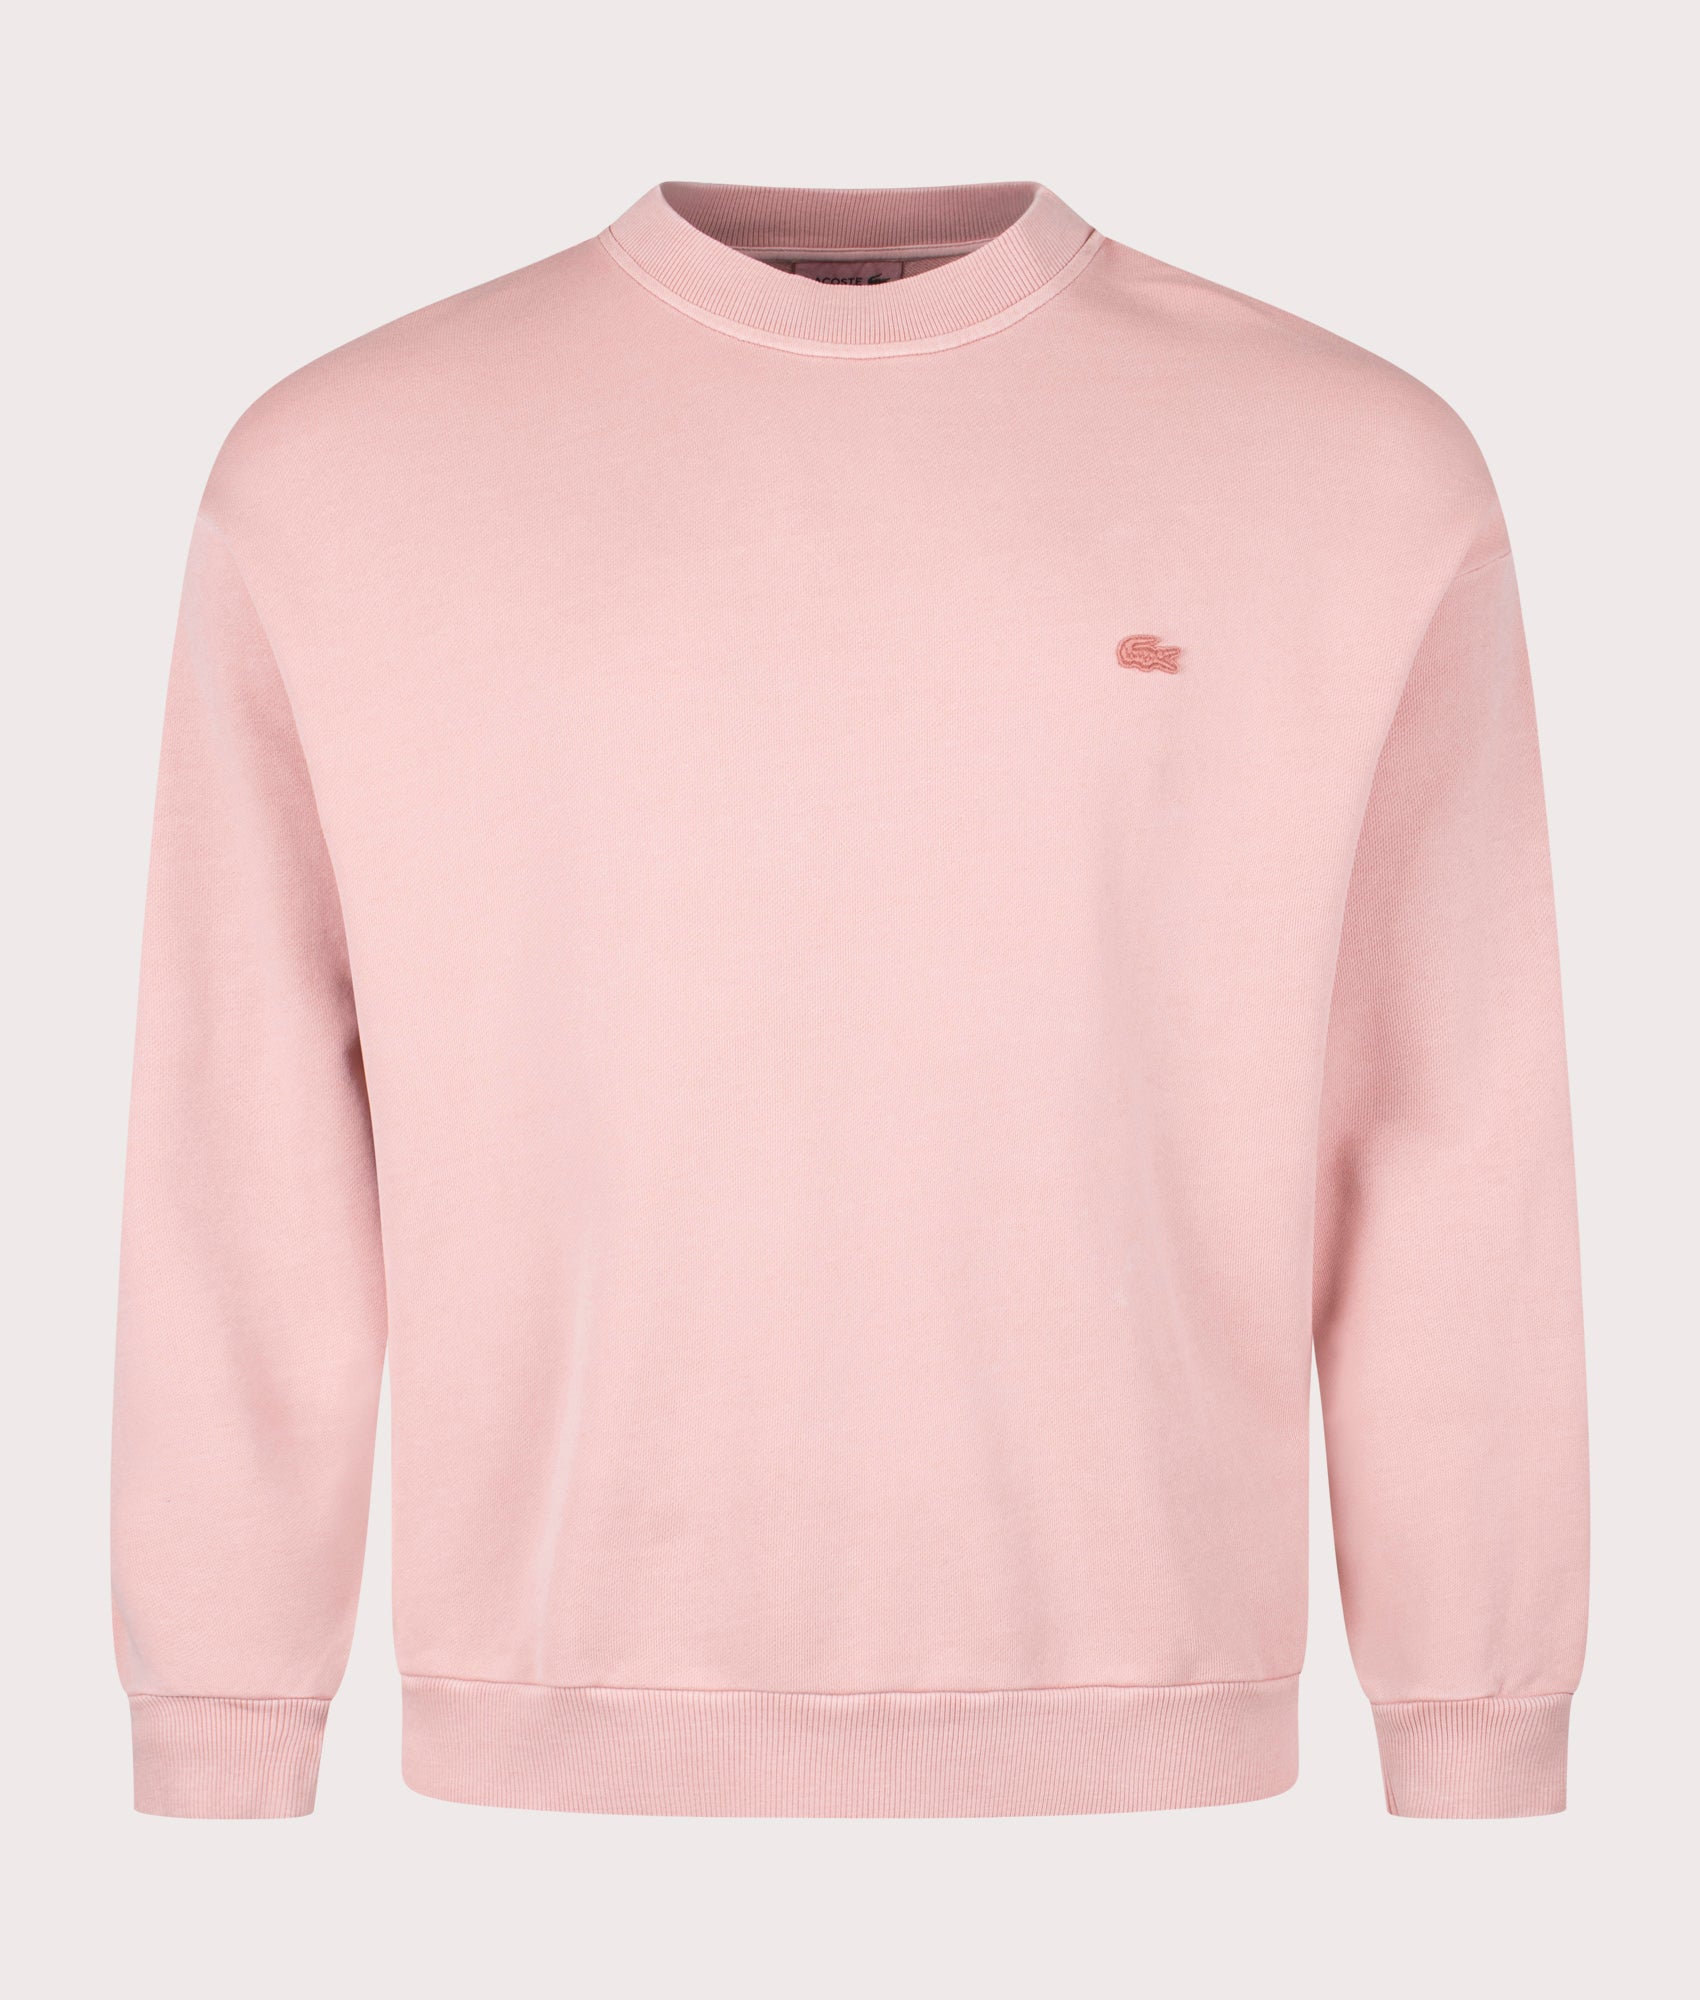 Lacoste Mens Logo Sweatshirt - Colour: K86 Eco Pink - Size: 6/XL